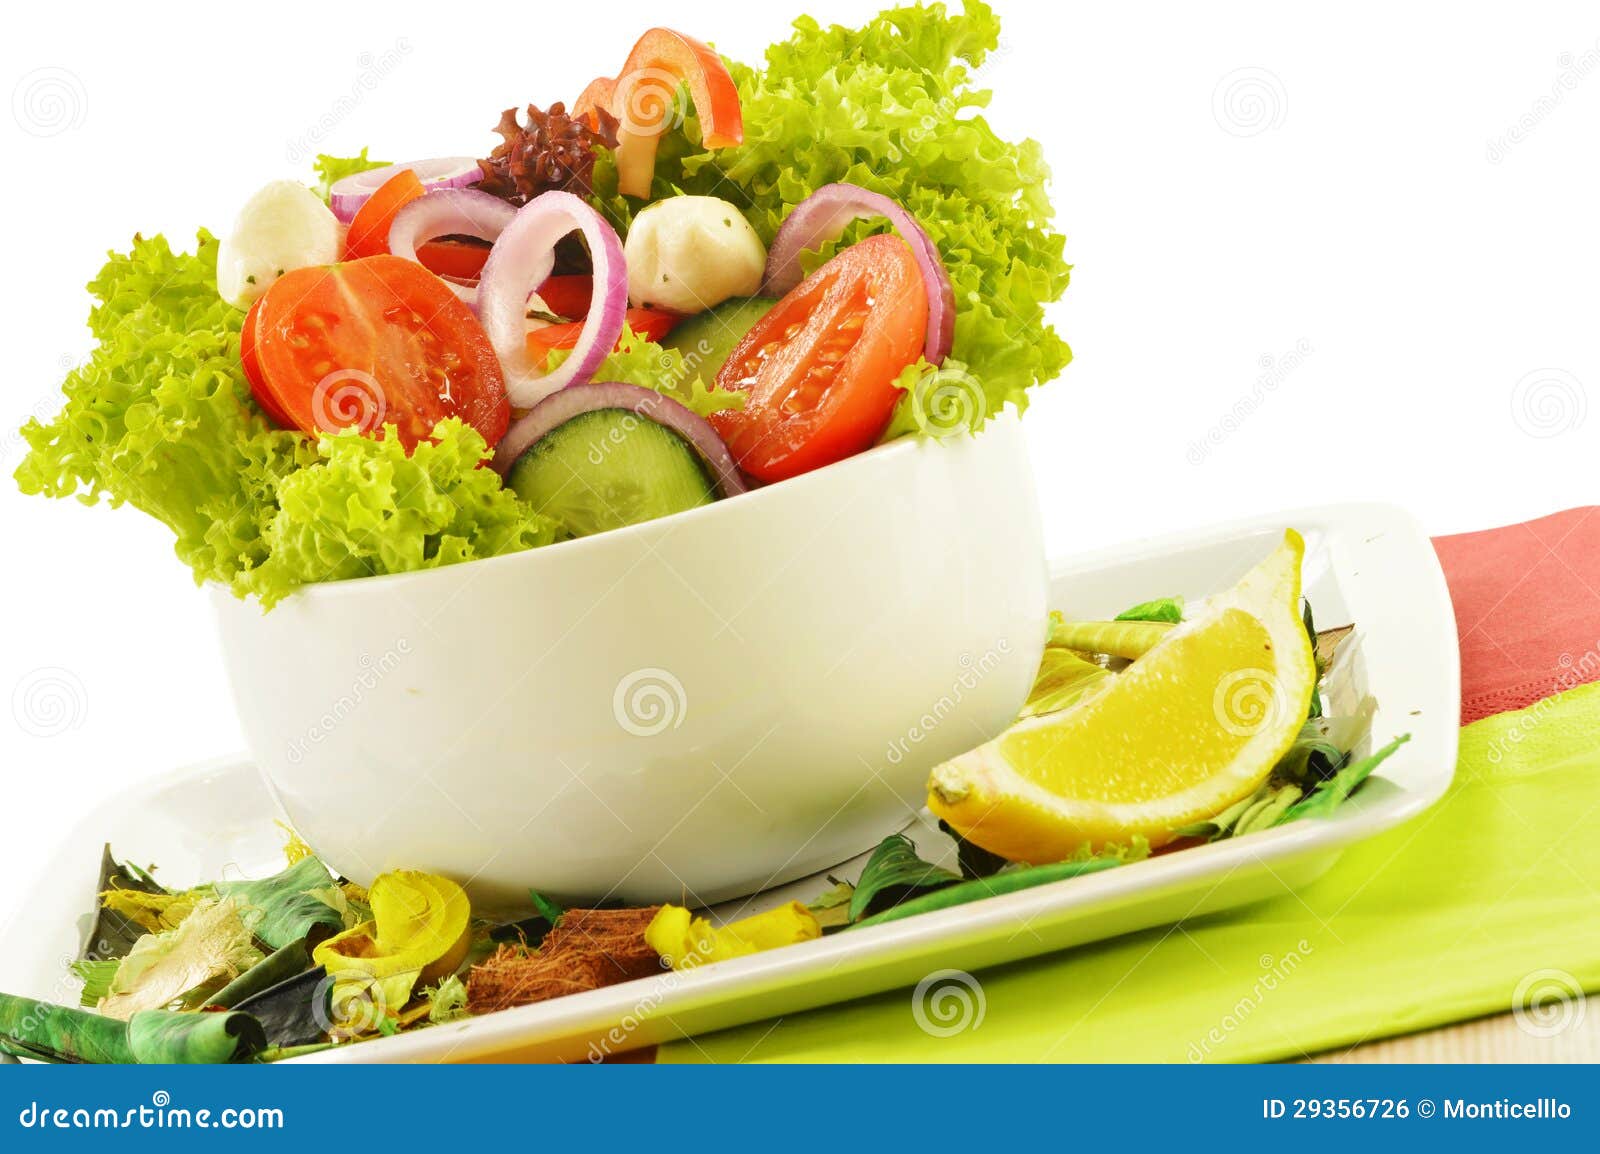 Vegetable Salad Bowl on White Stock Photo - Image of mozzarella ...